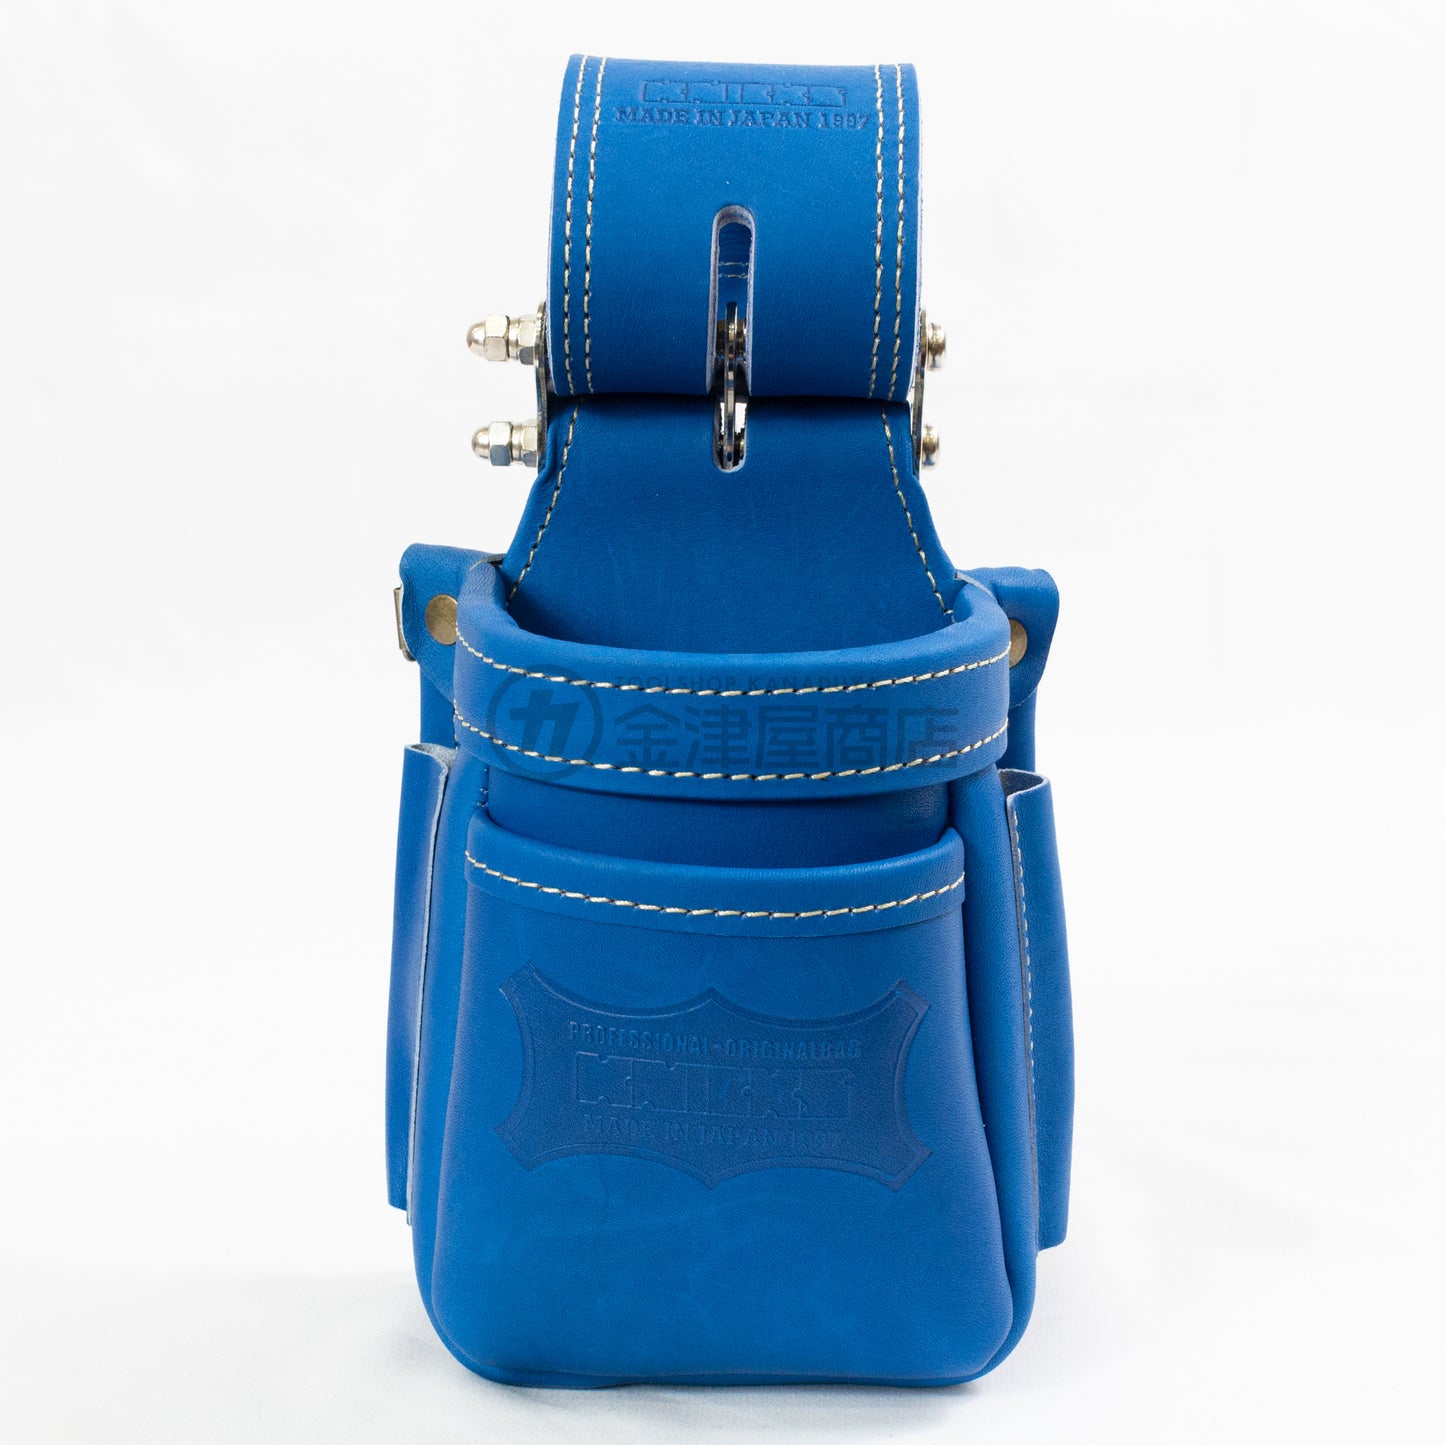 ニックス(KNICKS) 最高級硬式グローブ革小物腰袋 チェーンタイプ ブルー/レッド-腰袋-KGBL-201VADX-金津屋商店